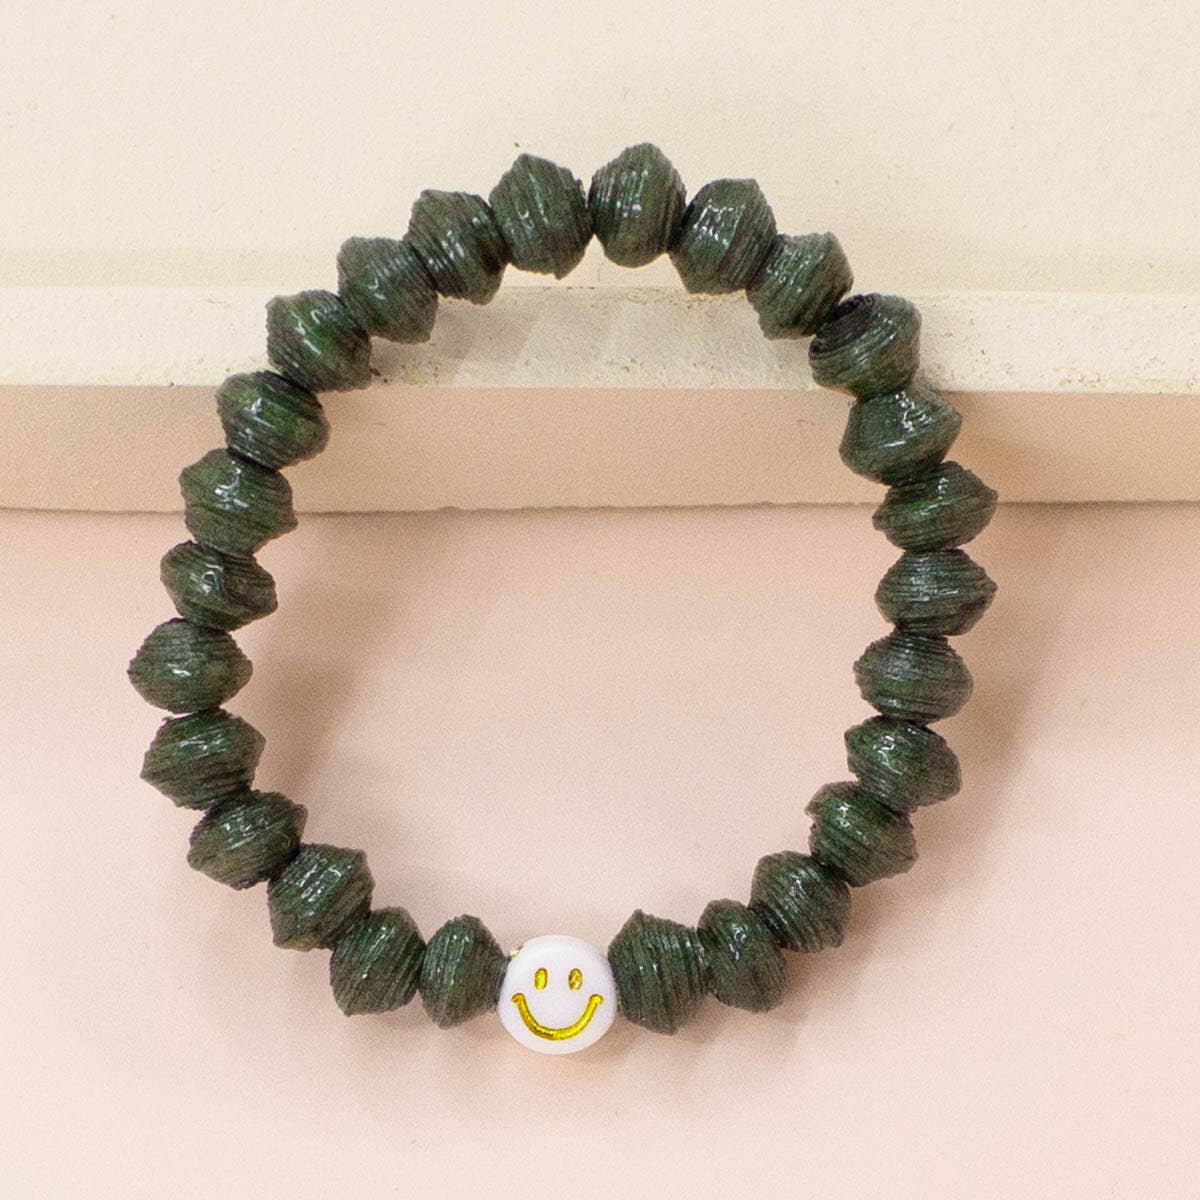 The Smiley Symbol Bracelet (Kids) - Forest Green